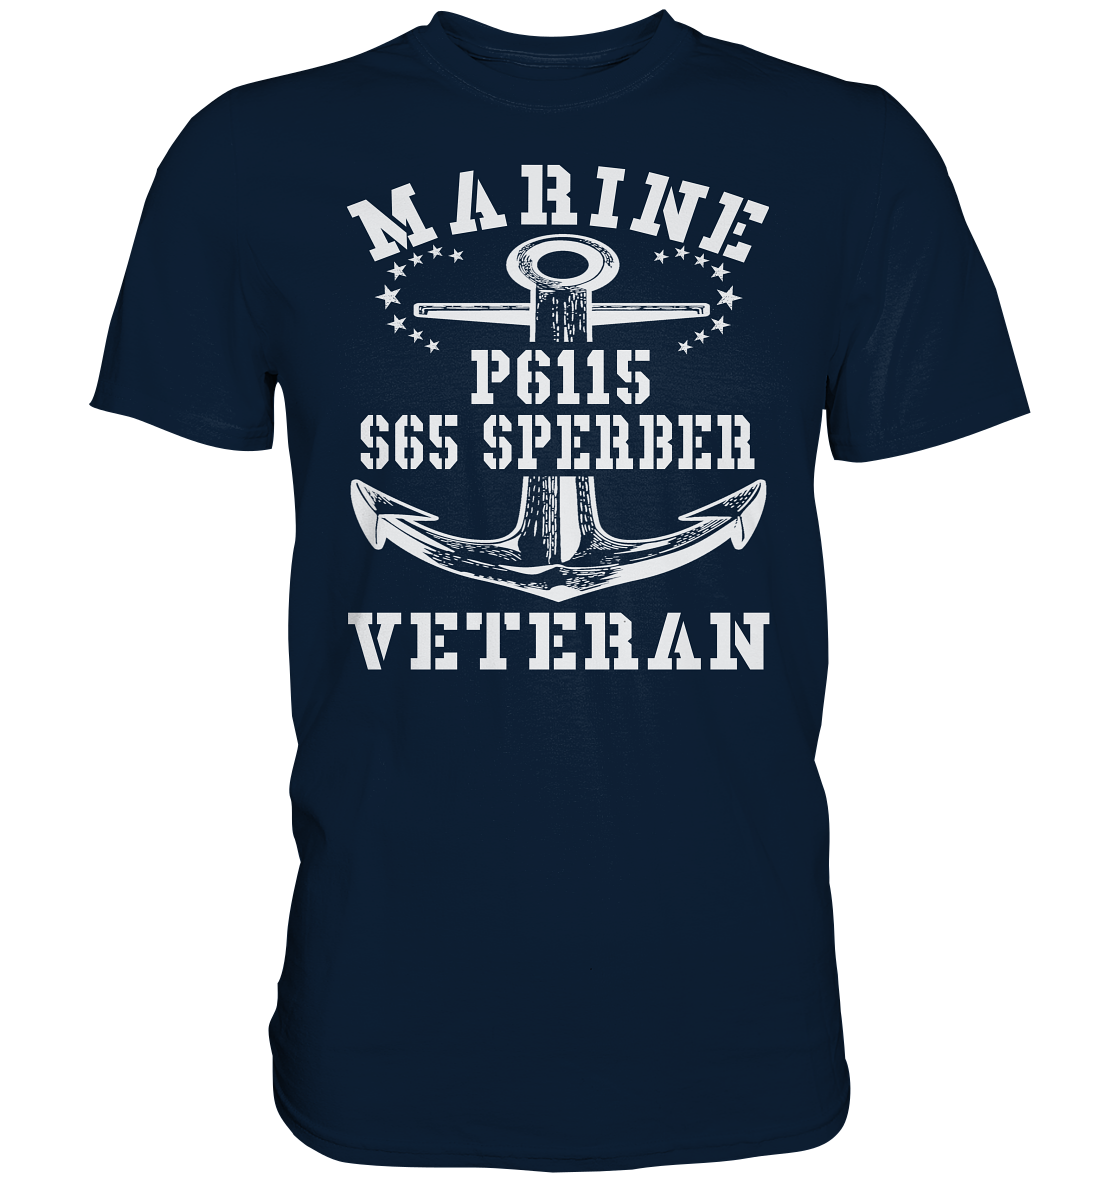 FK-Schnellboot P6115 SPERBER Marine Veteran - Premium Shirt